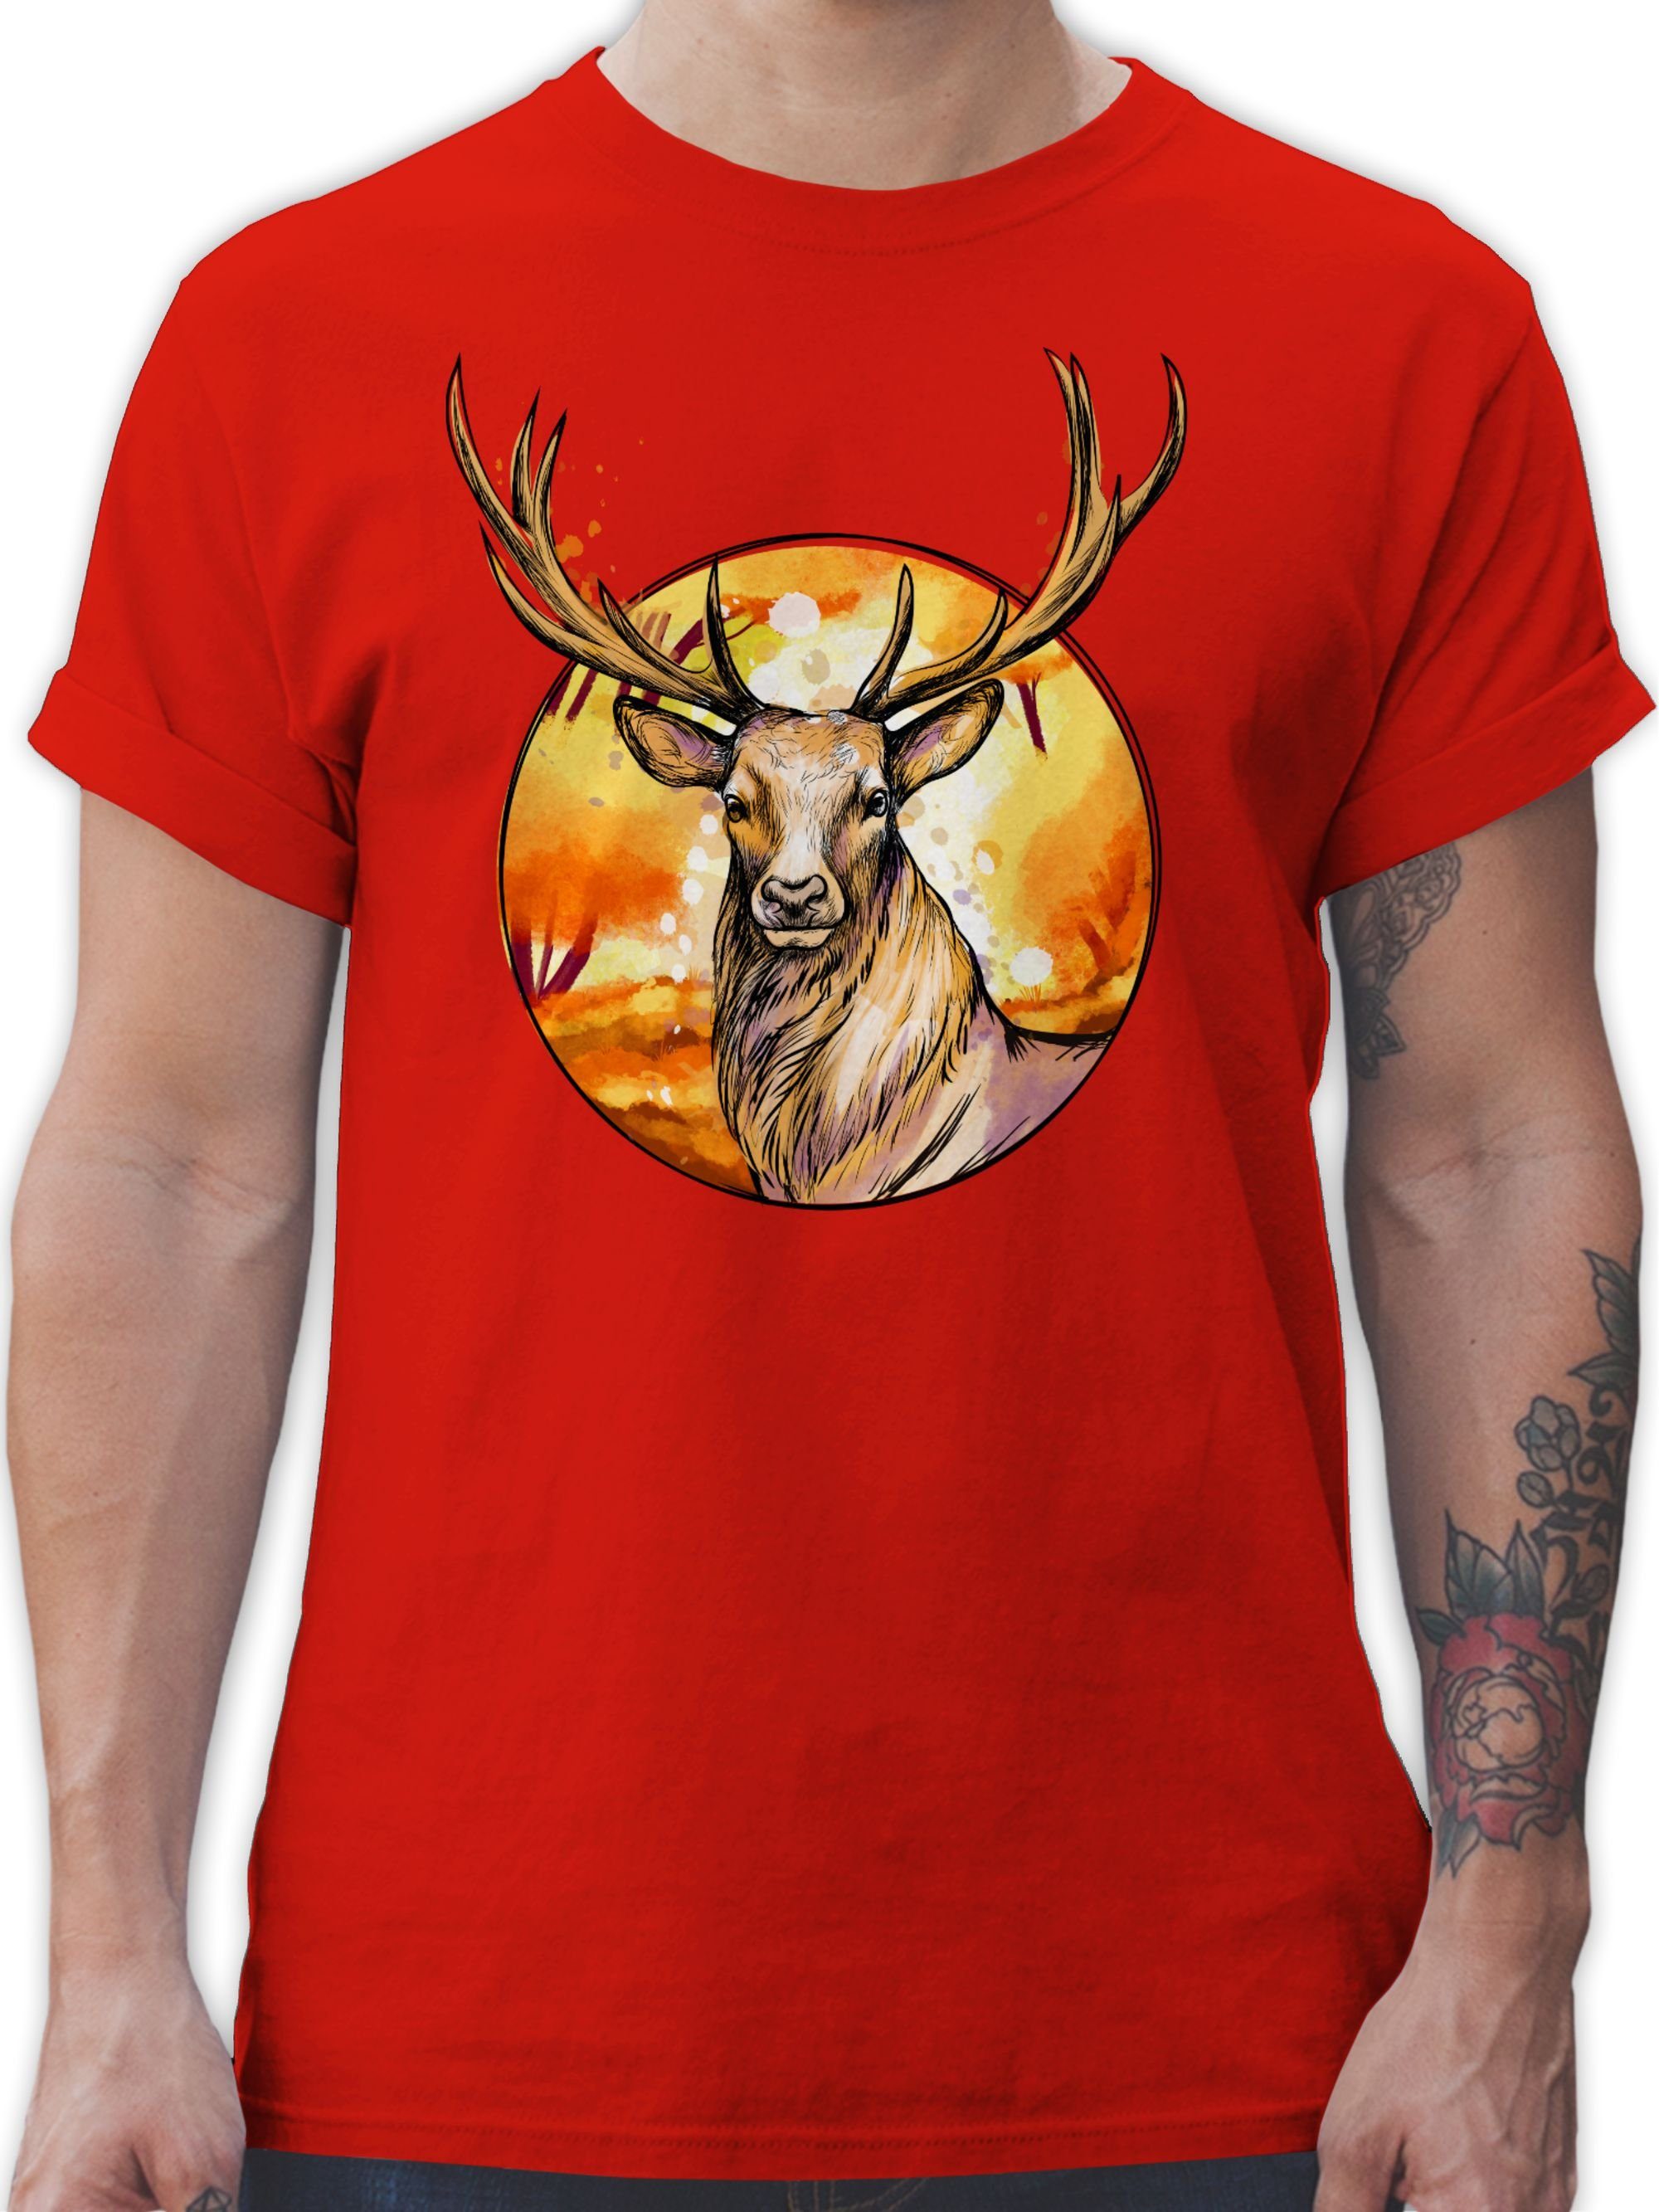 Shirtracer T-Shirt Hirsch mit Hintergrund - Mode für Oktoberfest Herren -  Herren Premium T-Shirt tshirt männer mit hirsch - herren shirt trachten